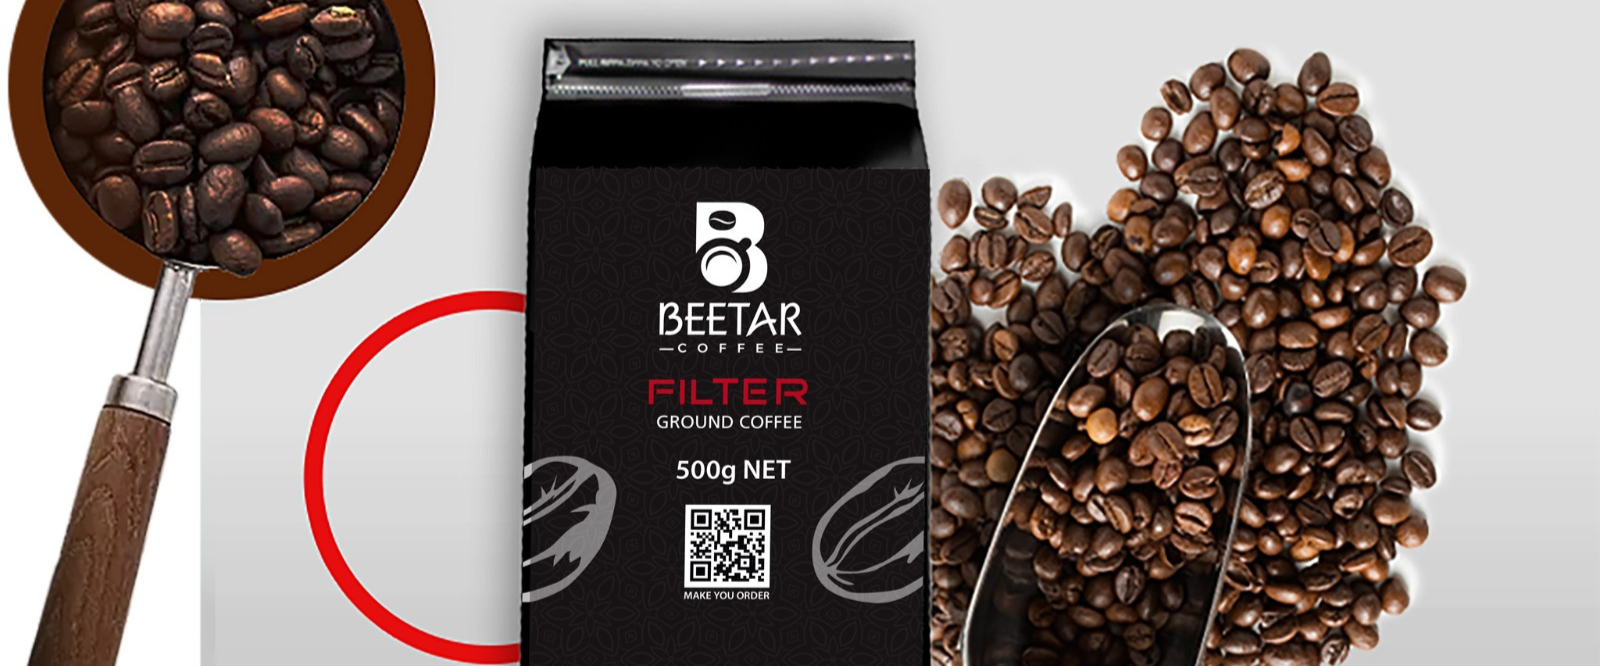 Beetar Coffee